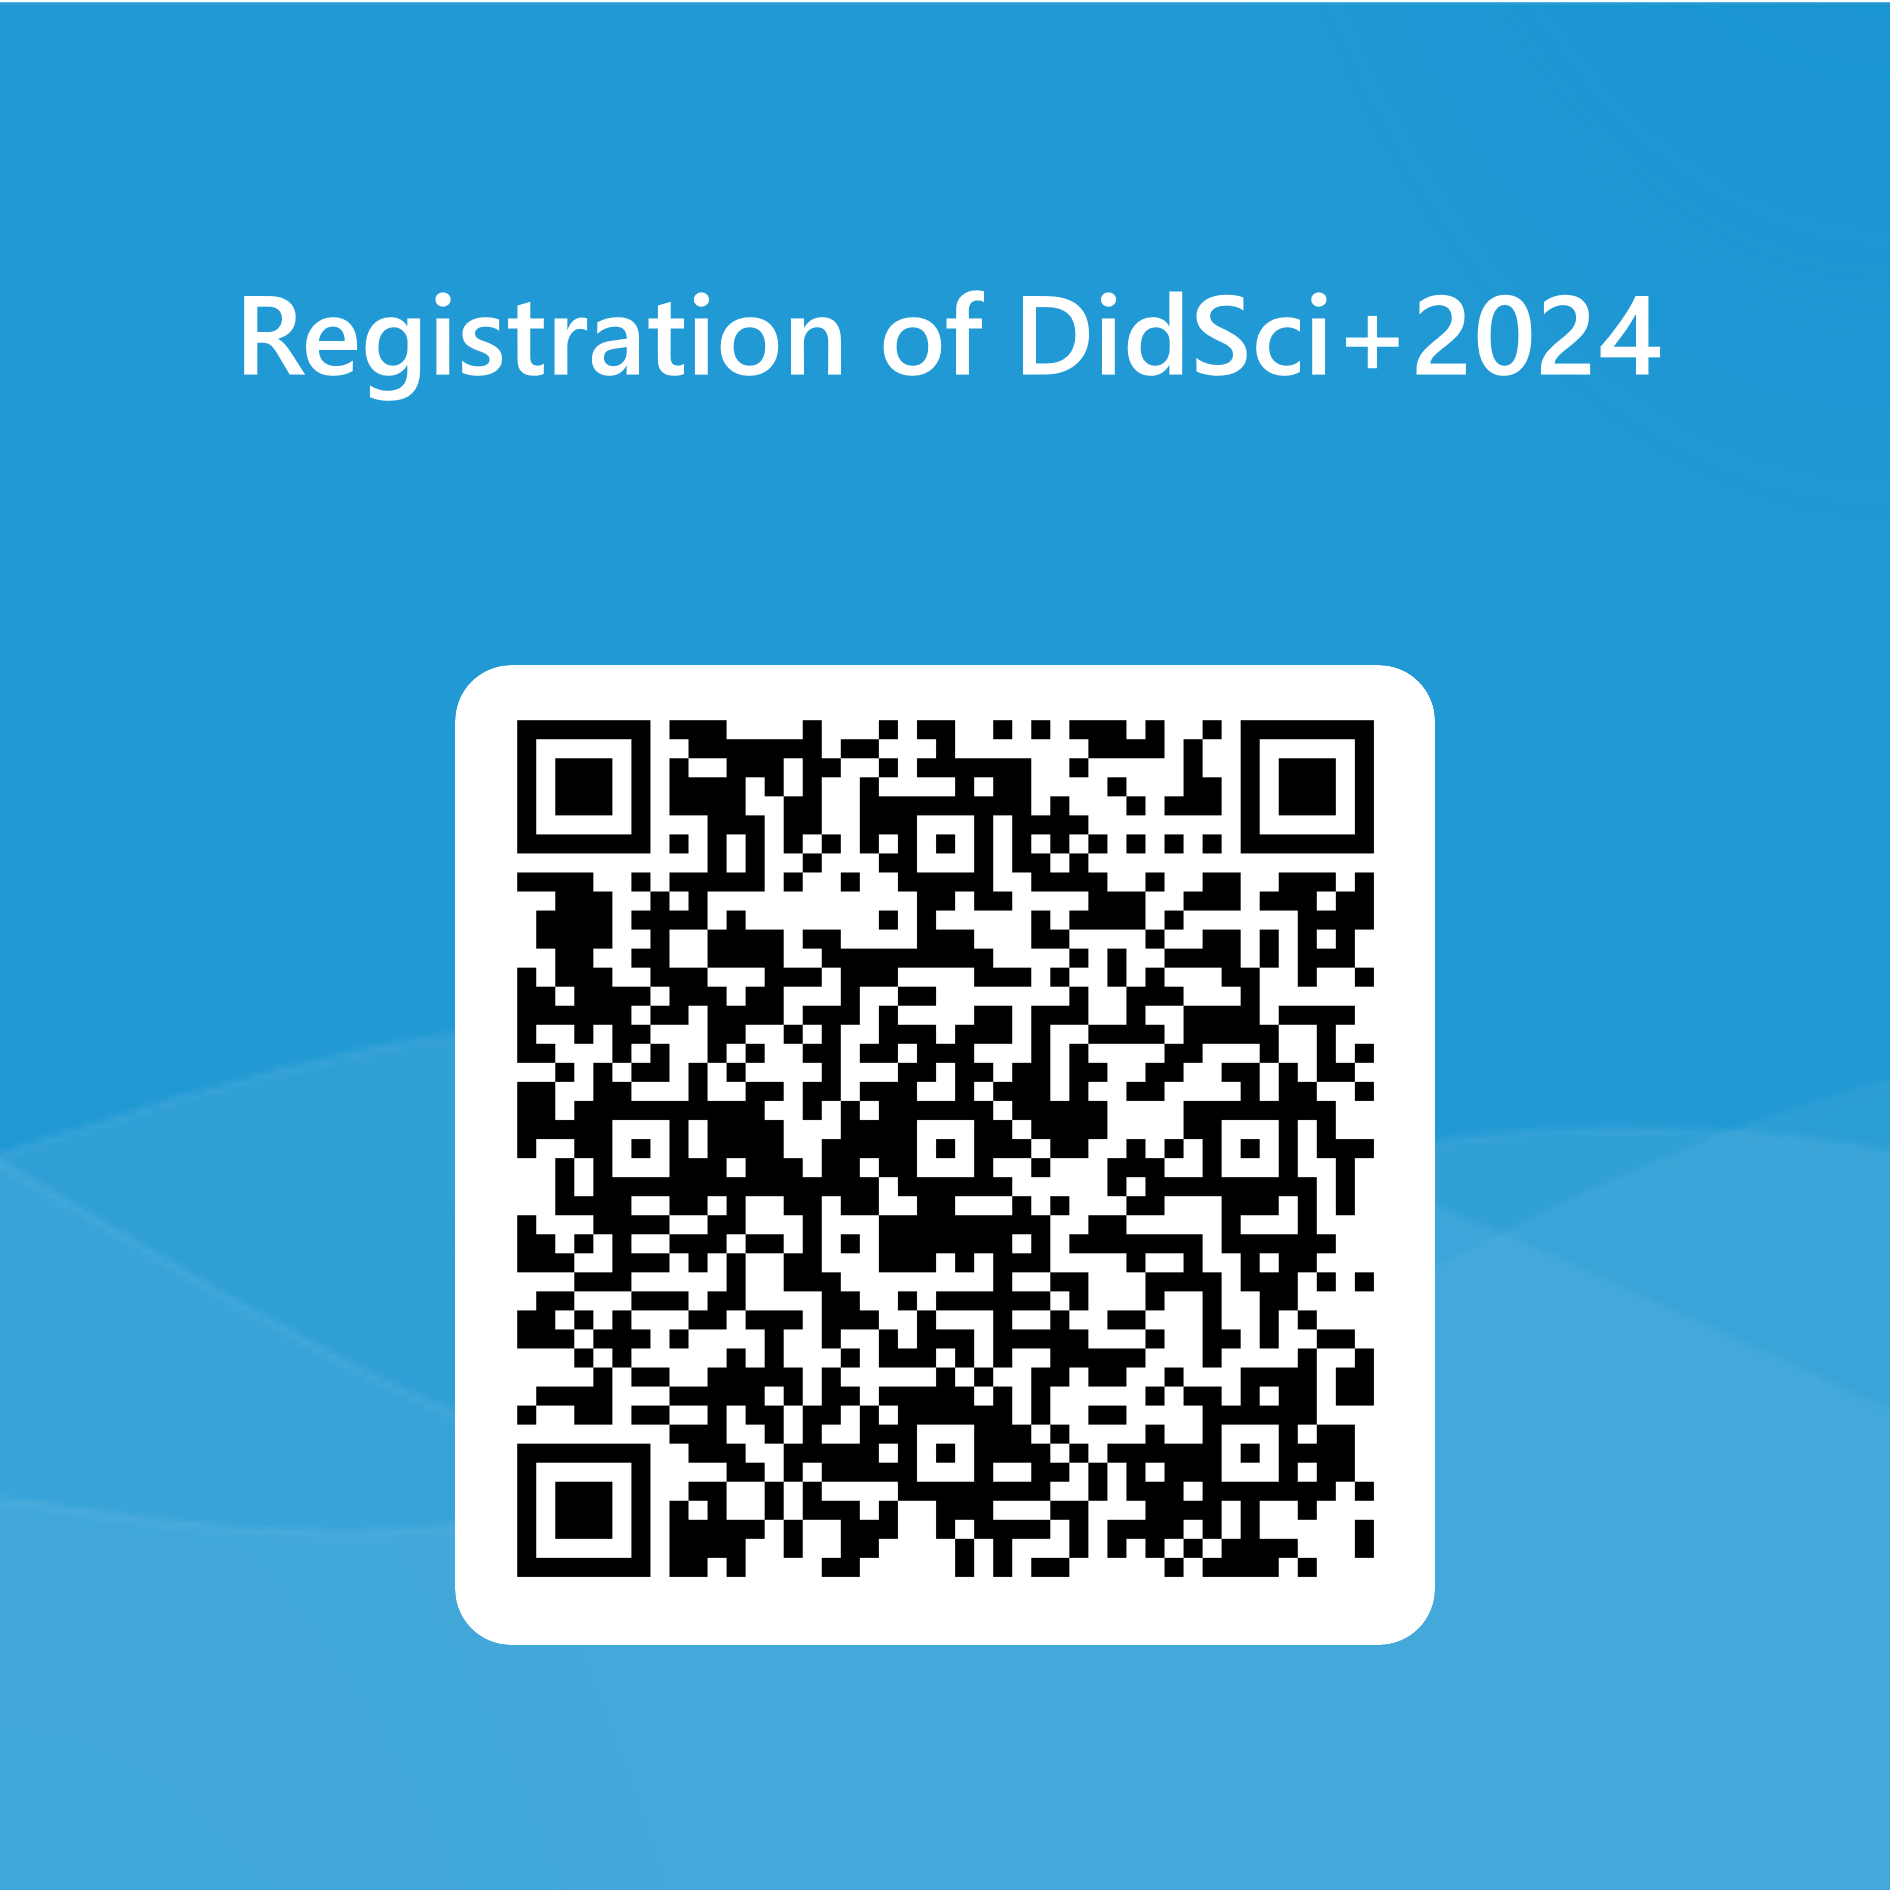 QRCode_Registration.png, 221kB